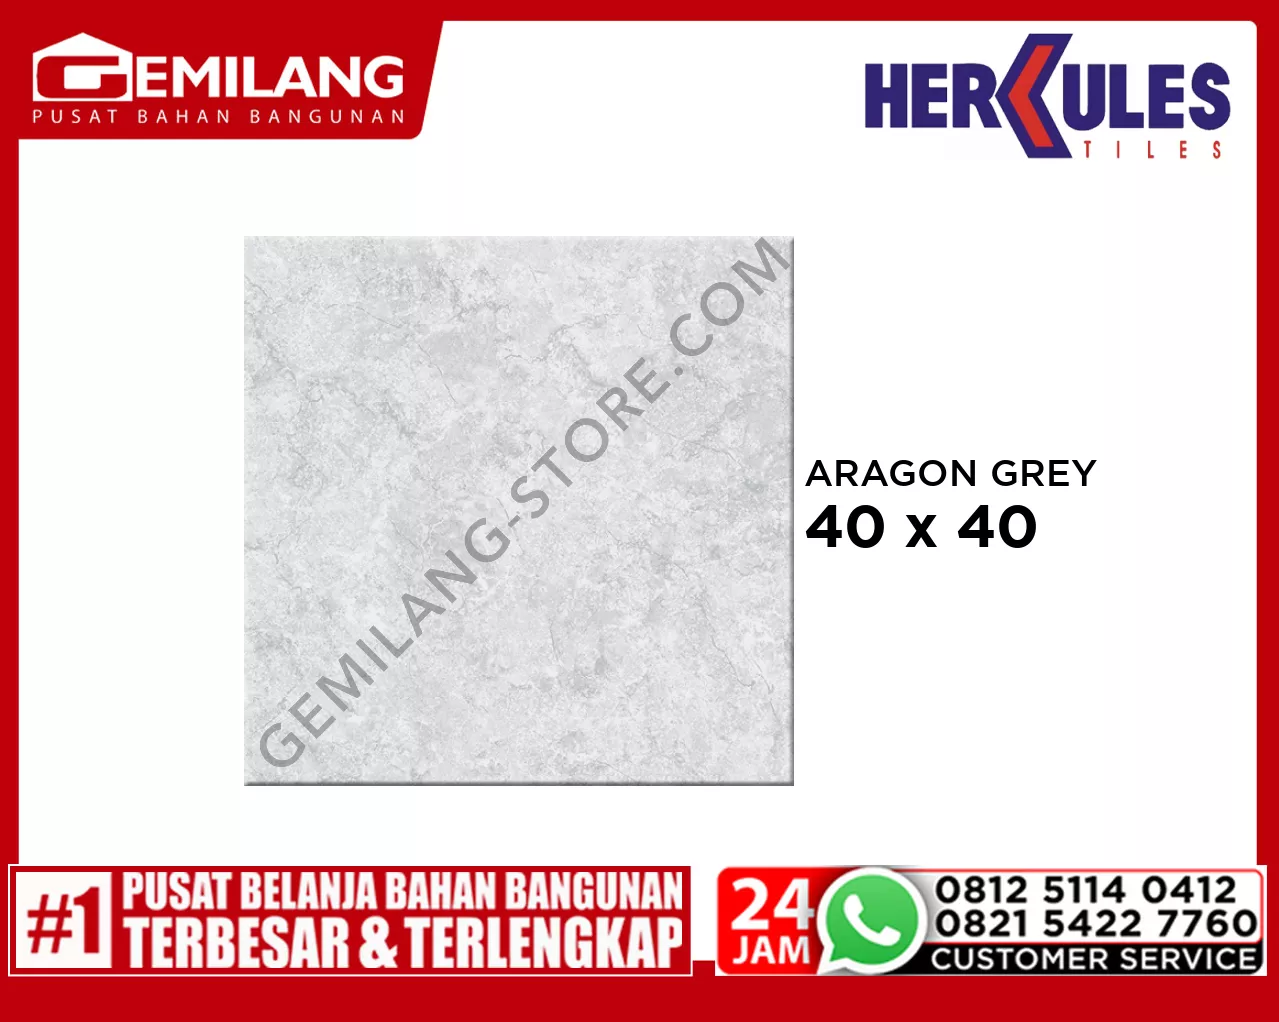 HERCULES ARAGON GREY 40 x 40